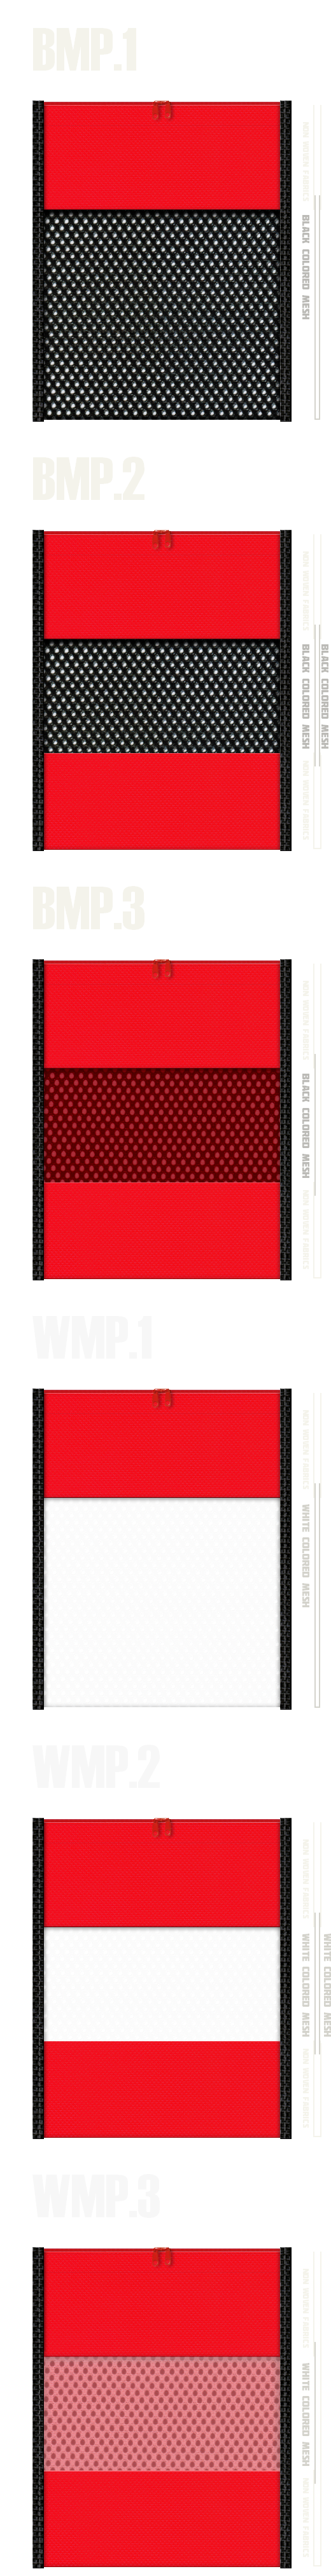 メッシュポーチのカラーシミュレーション：黒色・白色メッシュと赤色不織布の組み合わせ